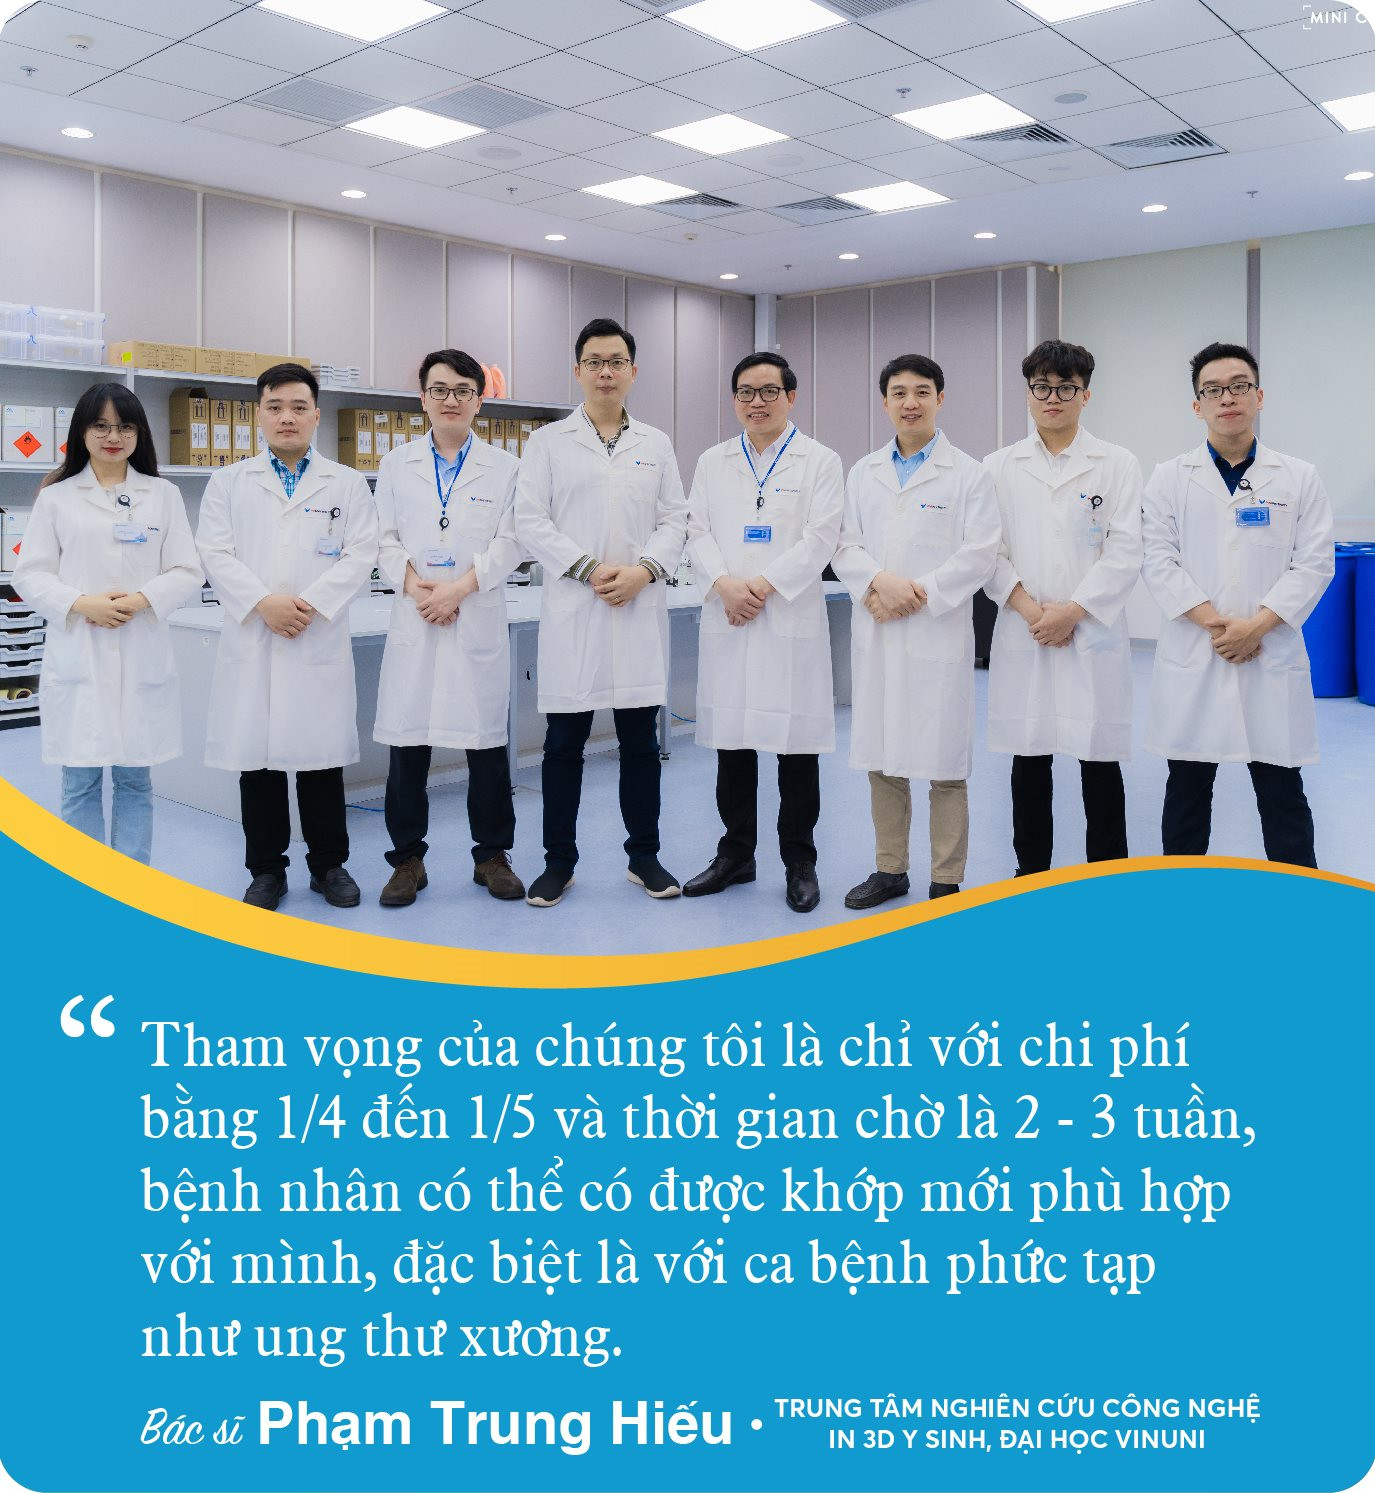 Phía sau công nghệ của VinUni giúp hiệu quả phẫu thuật xương ngang với các nước châu Âu và phù hợp hoàn toàn với người Việt - Ảnh 6.